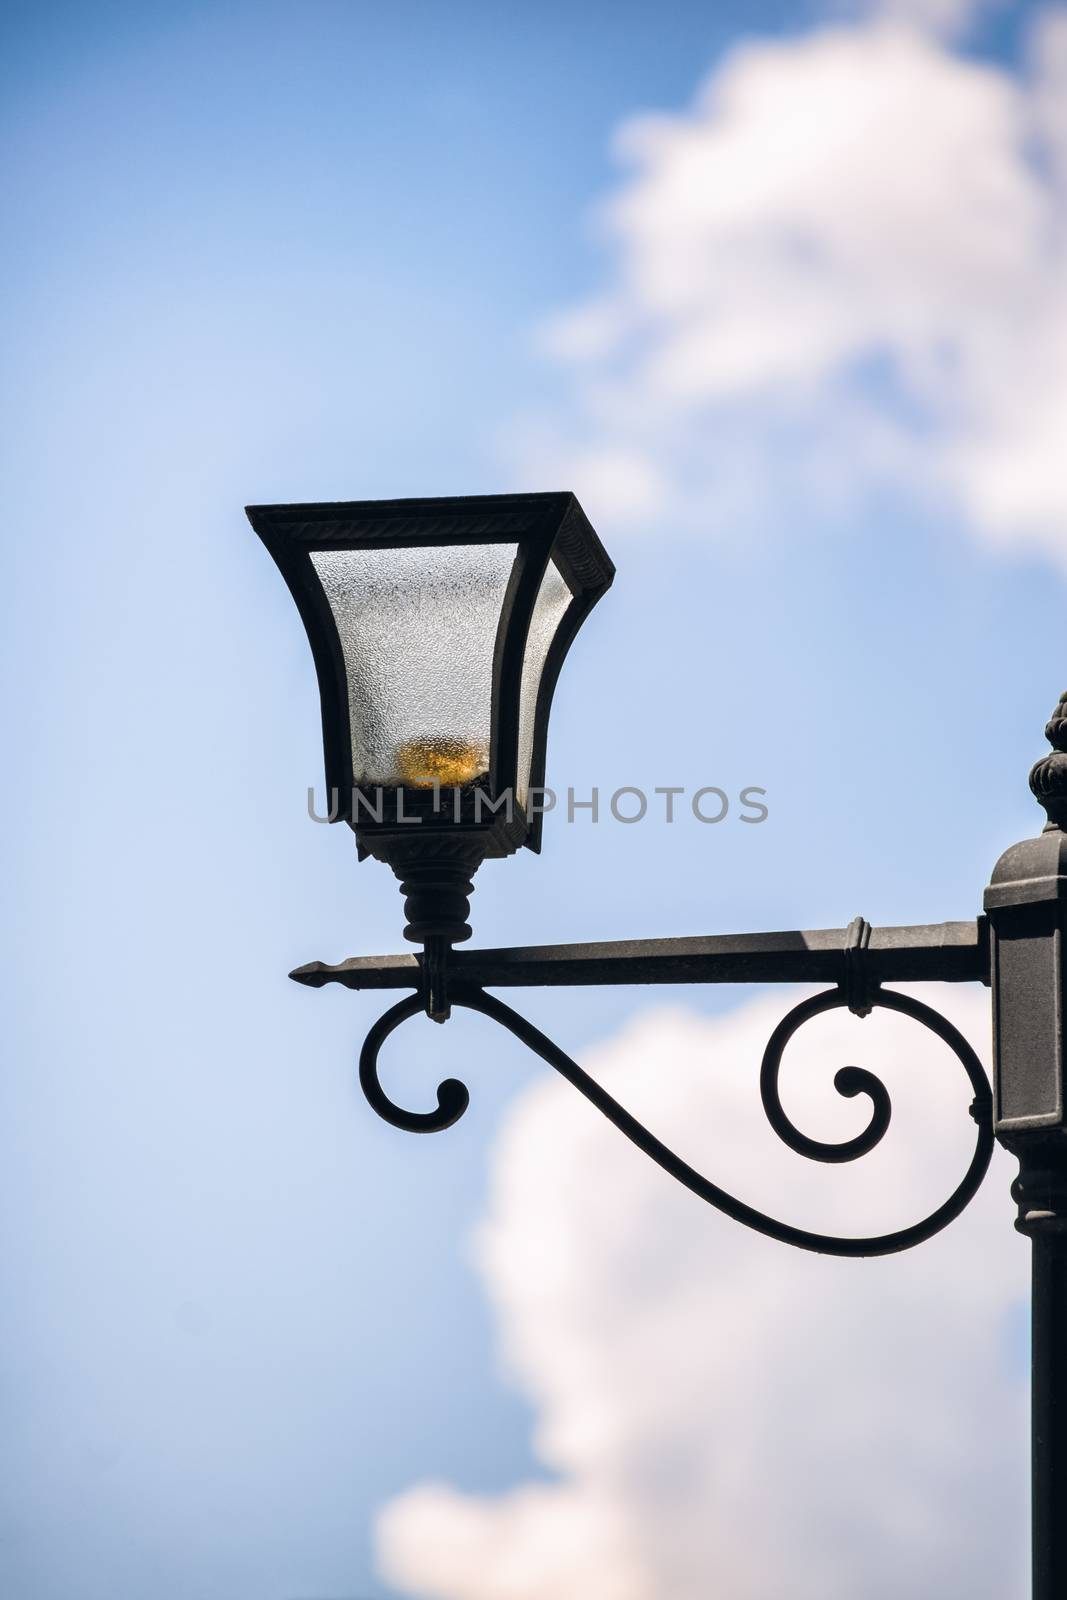 Close up shot of a street lantern under a cloudy blue sky.